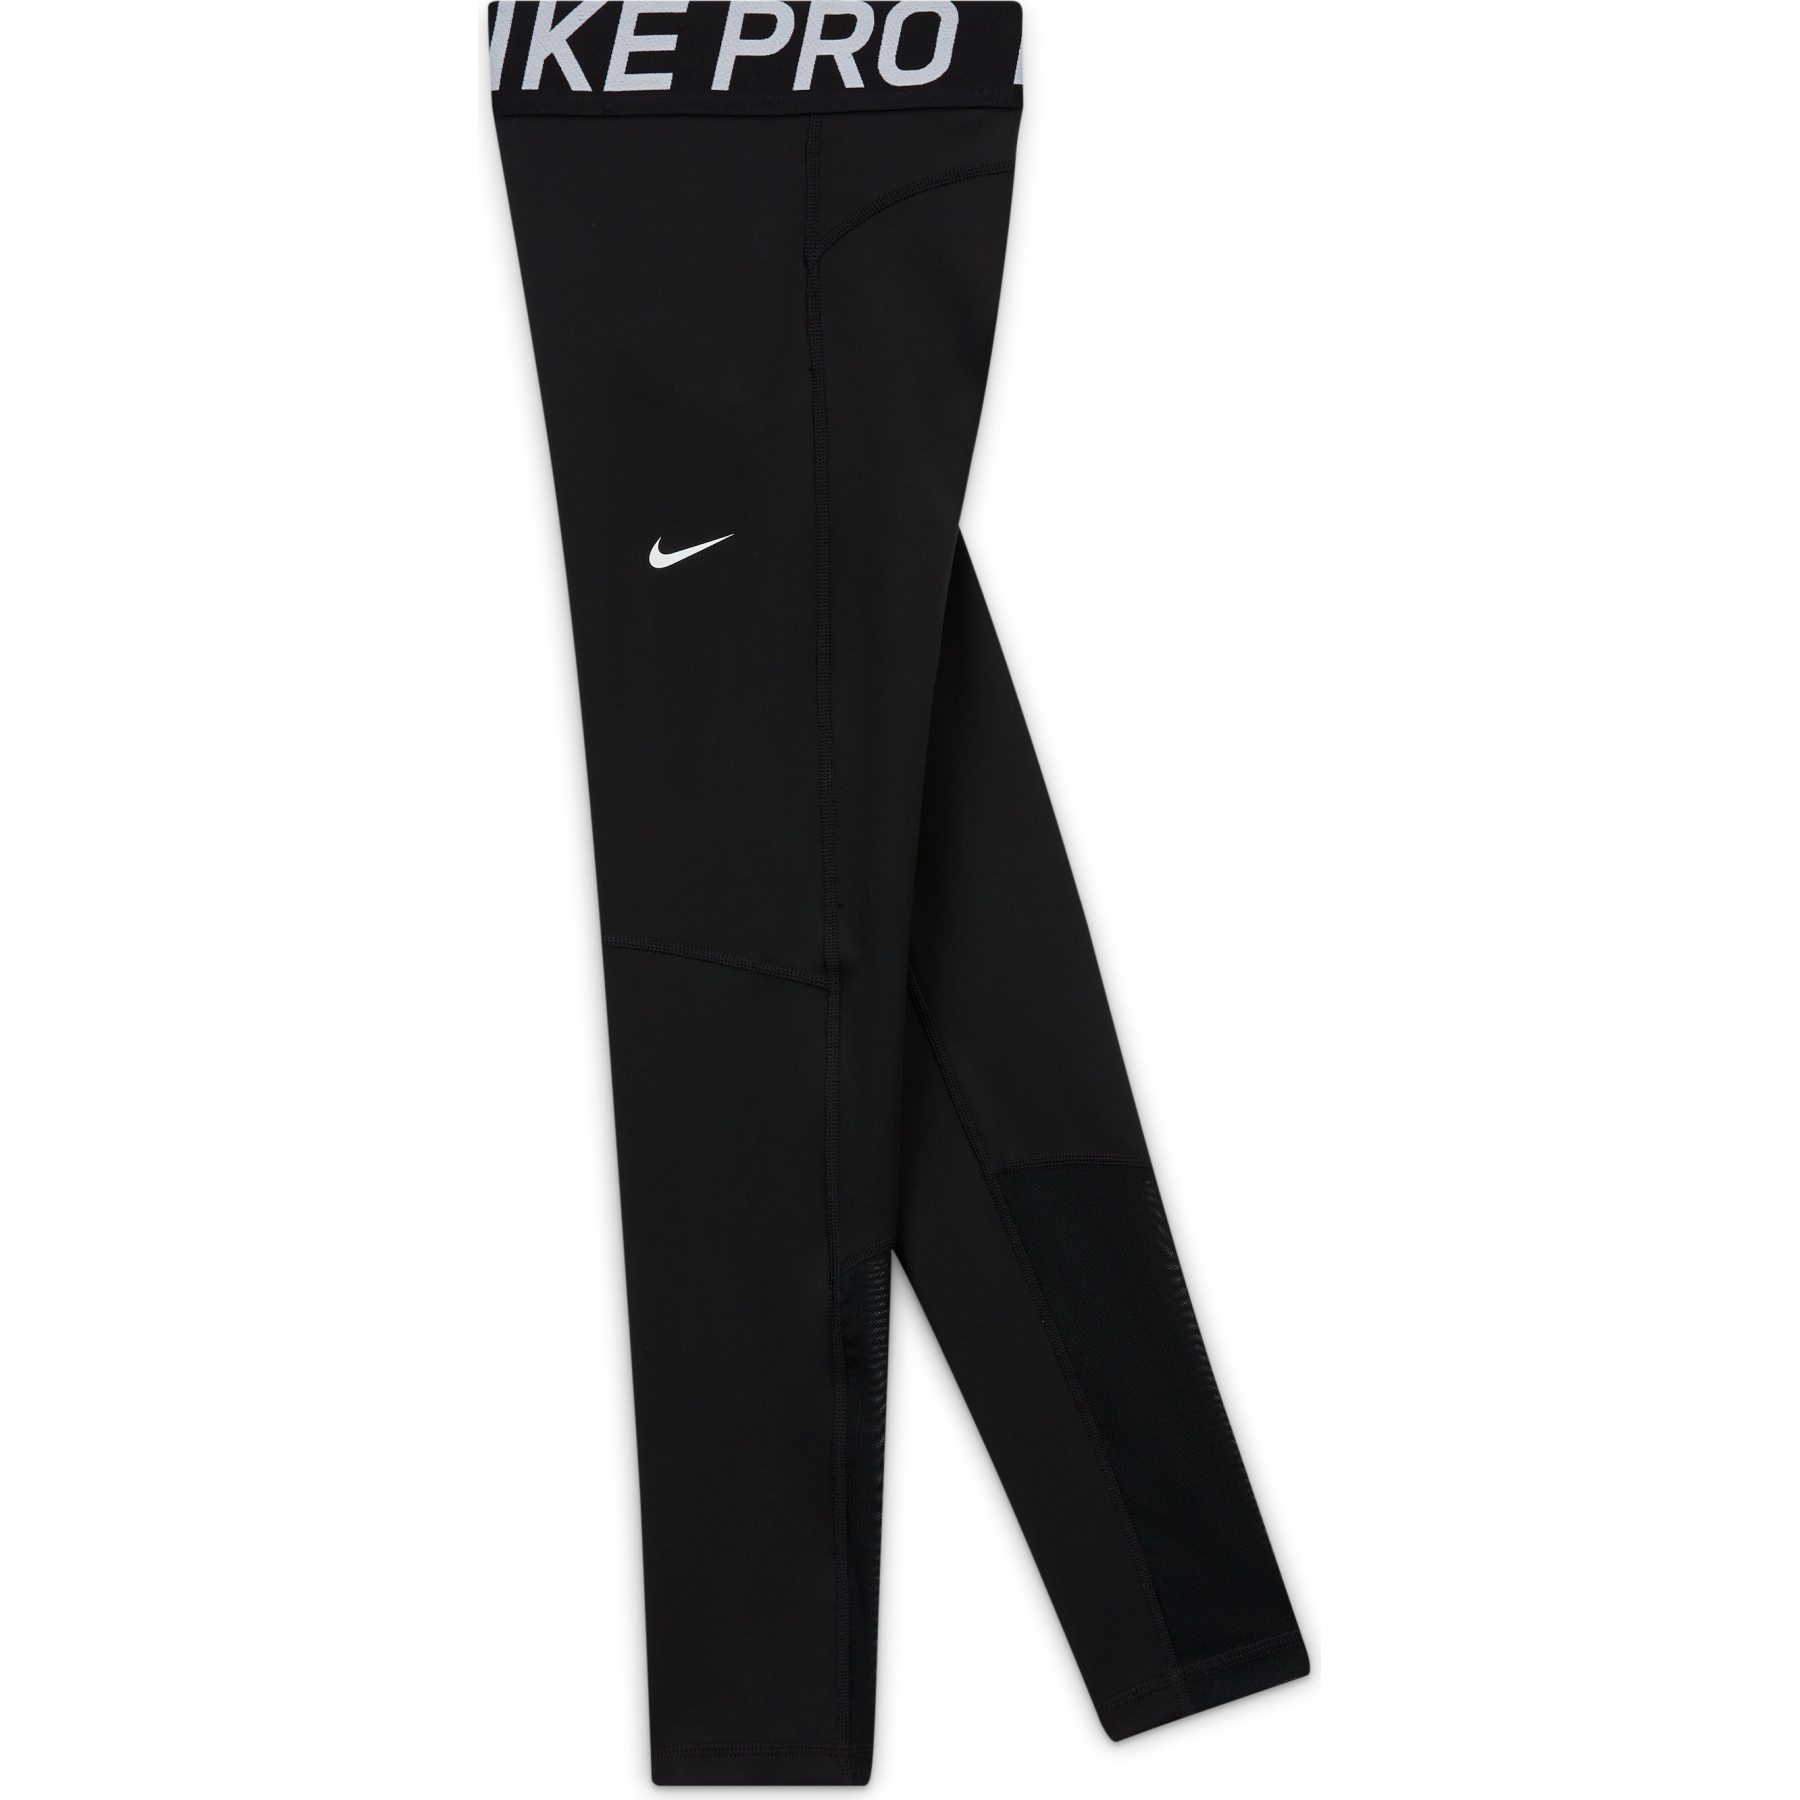 Produktbild von Nike Pro Leggings für ältere Kinder - black/white DA1028-010